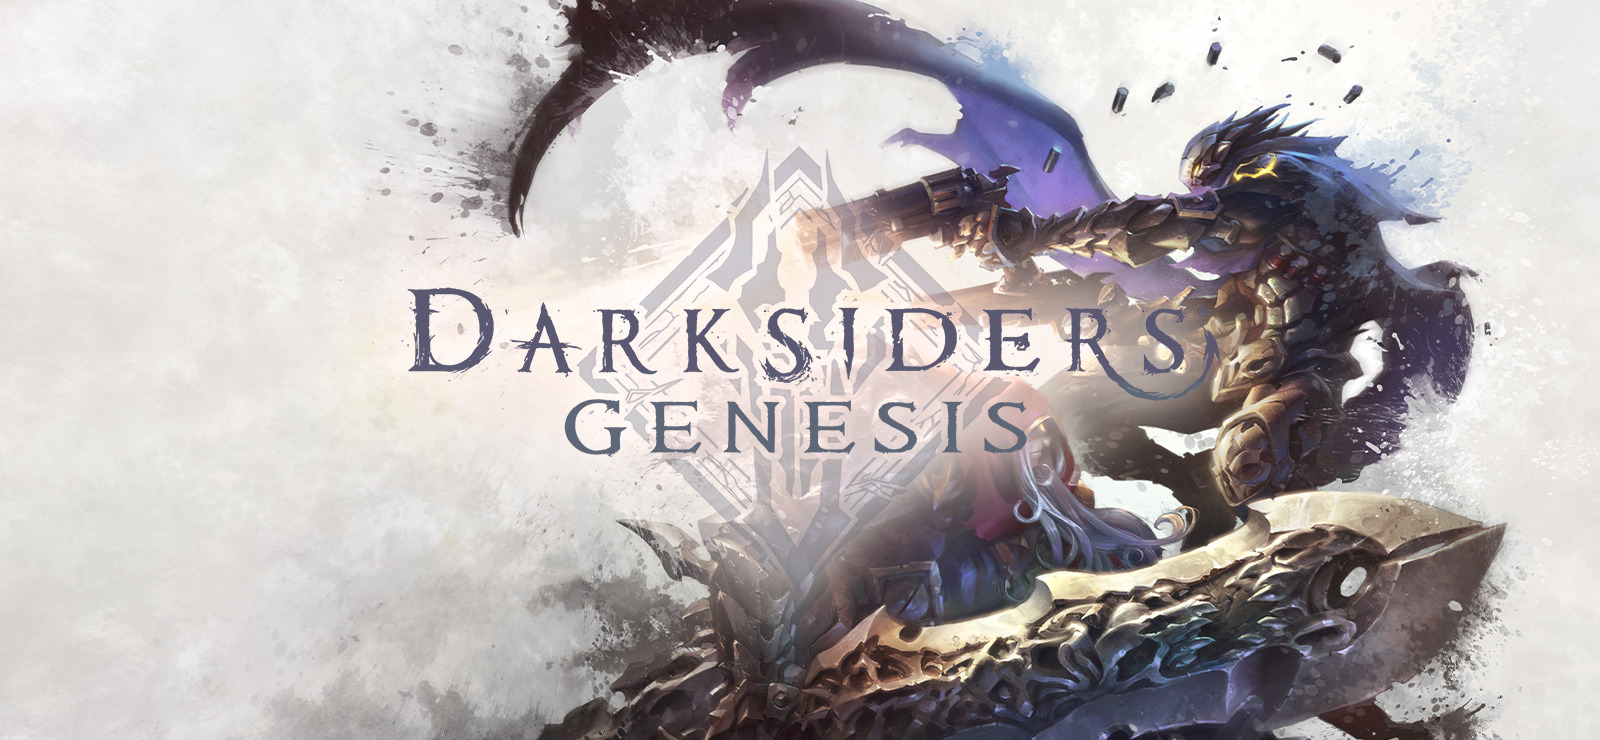 Darksiders Genesis: polska wersja gry trafi na Xbox One i Nintendto Switch! Kiedy premiera?